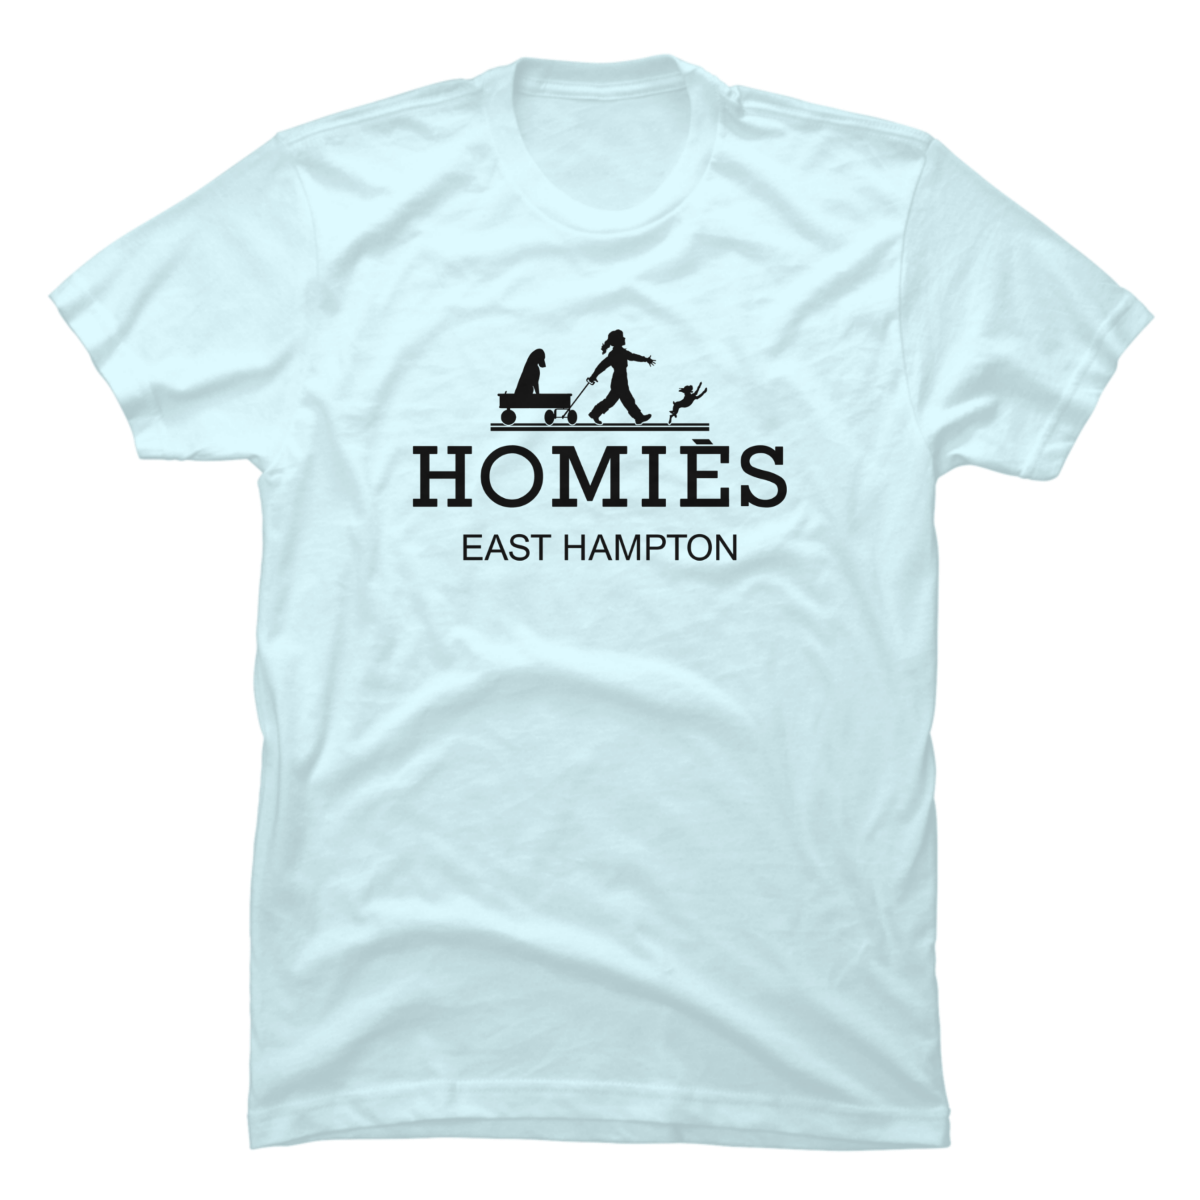 homies hermes tshirt